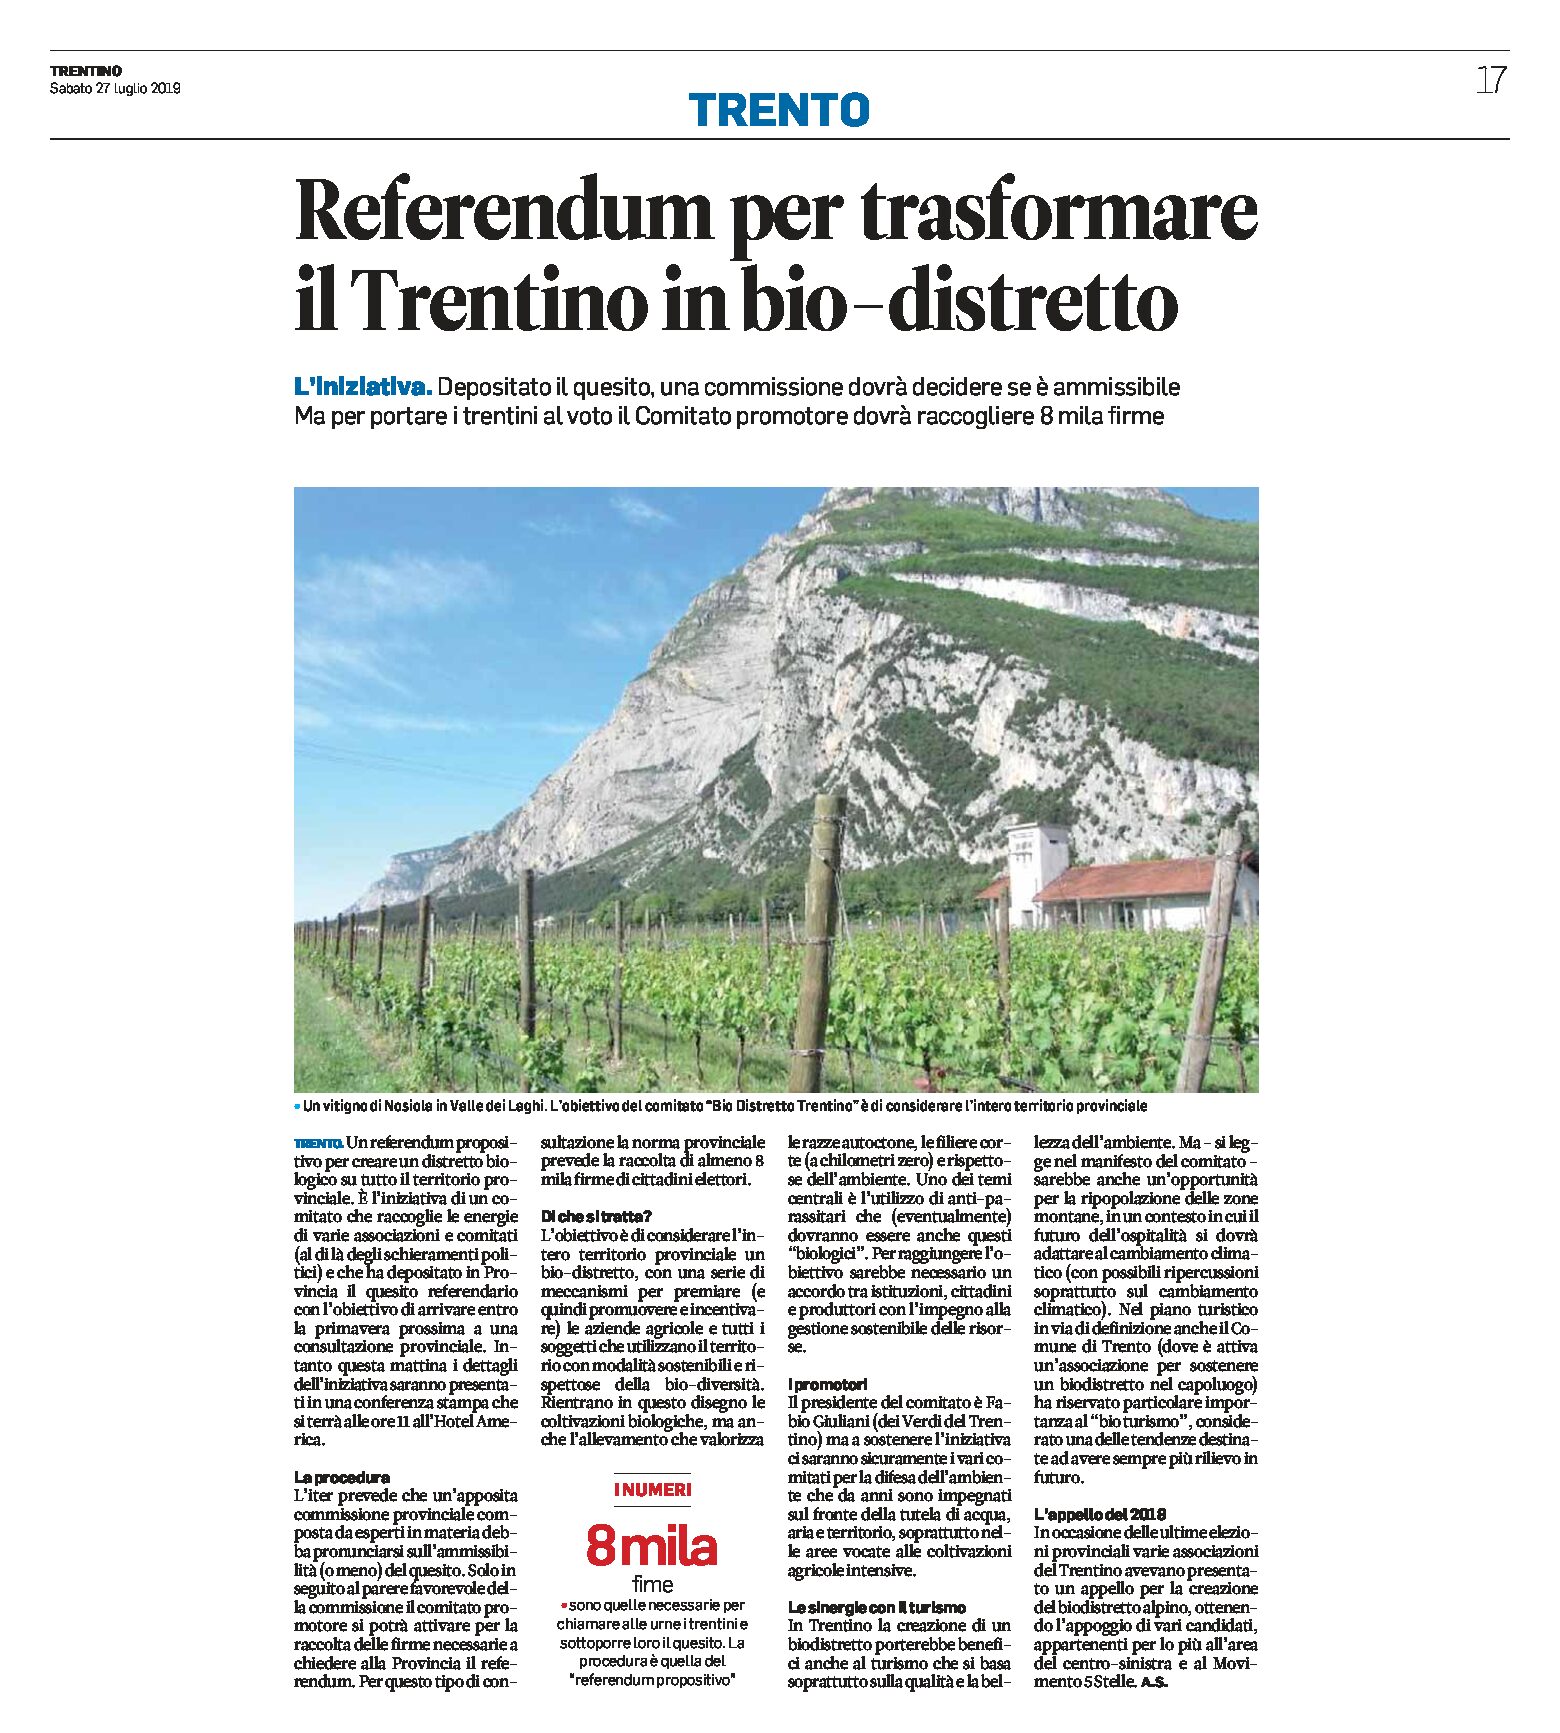 Referendum: per trasformare il Trentino in bio-distretto. Il Comitato dovrà raccogliere 8 mila firme